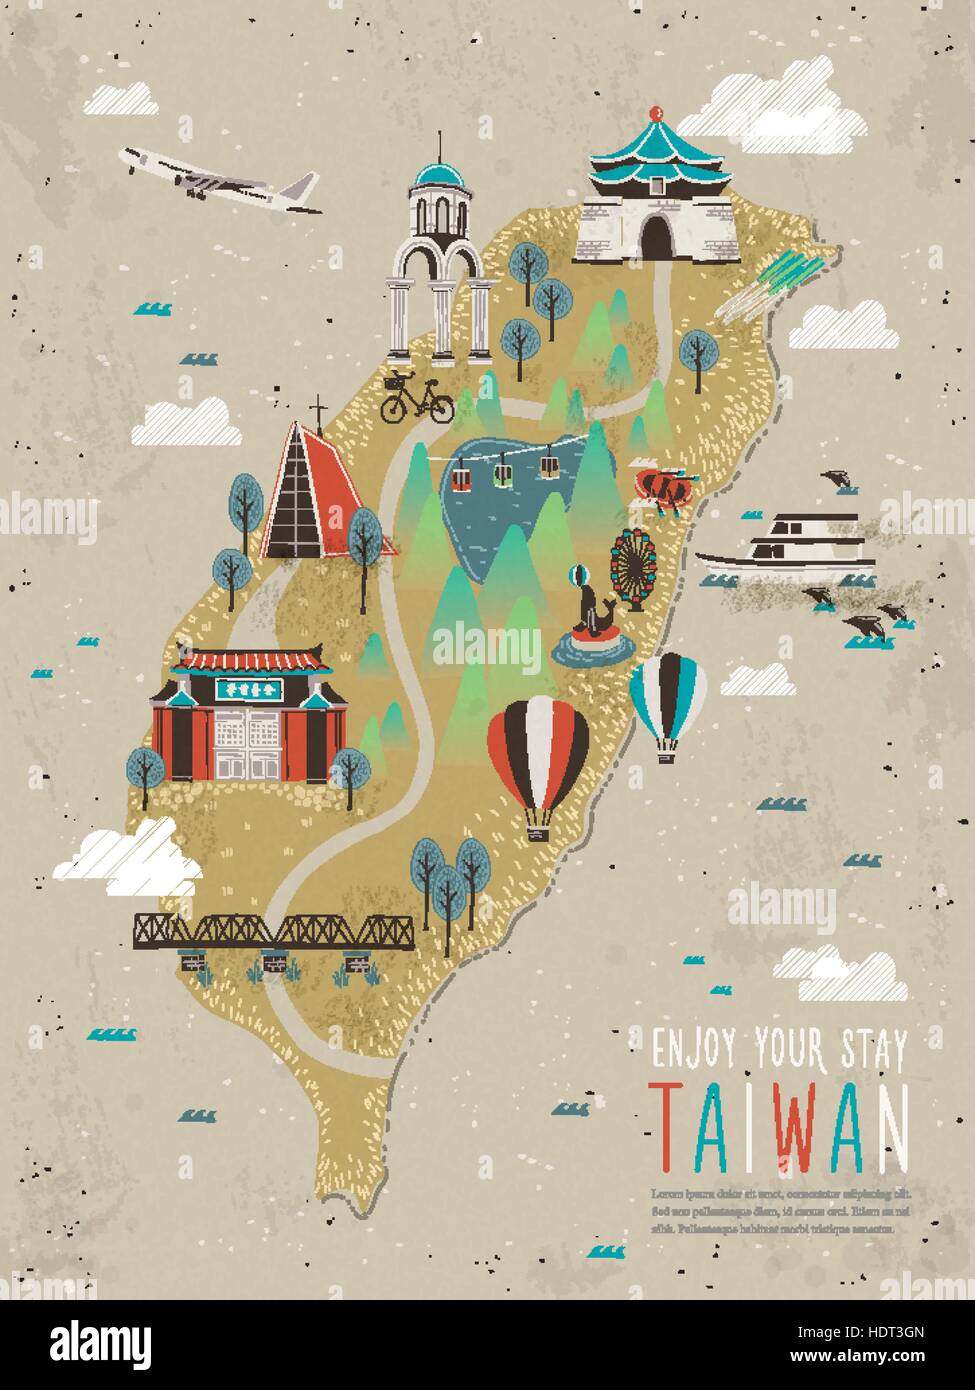 Adorable Taiwan attractions carte de télévision style - mots sur le bâtiment rouge signifie que la première école à Taiwan Illustration de Vecteur